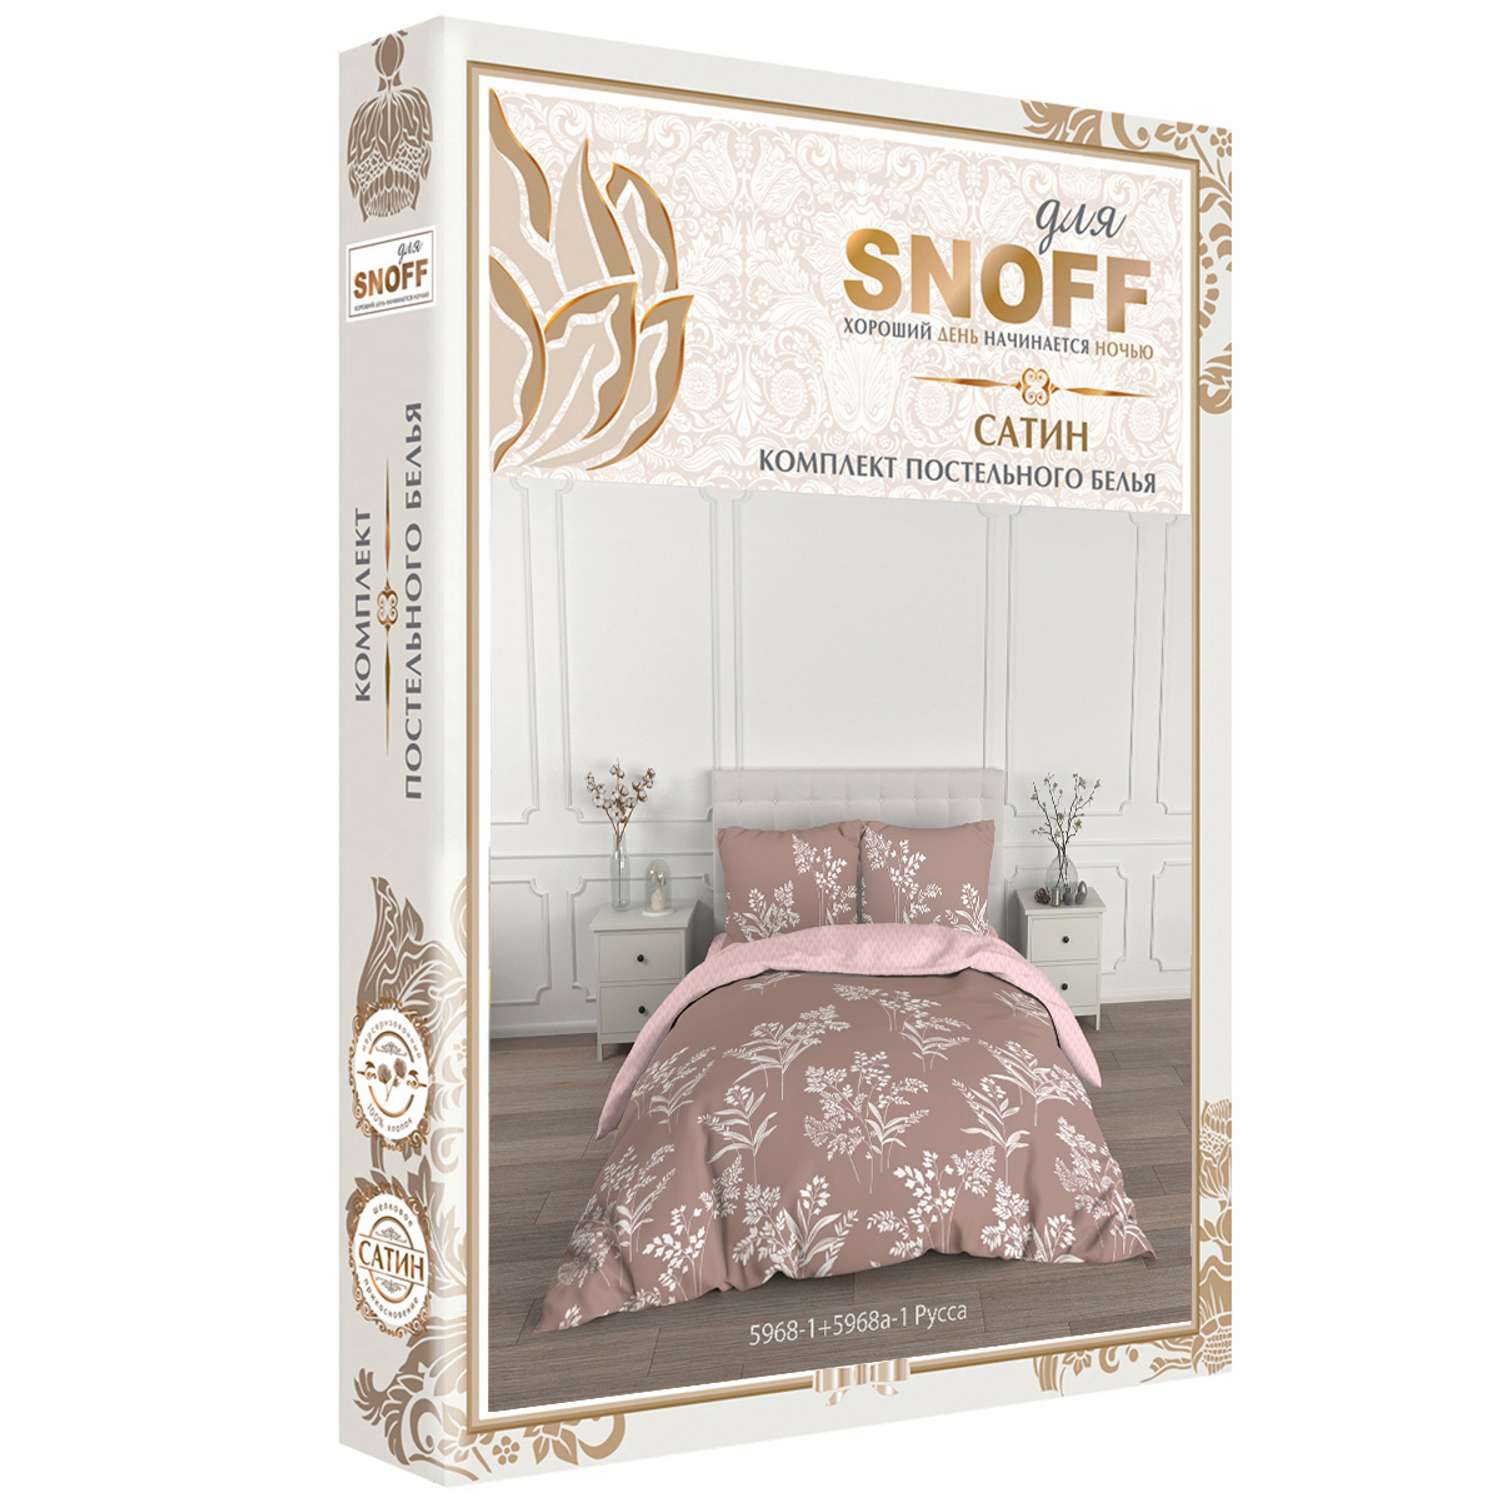 Комплект постельного белья для SNOFF Русса 2-спальный макси сатин - фото 7